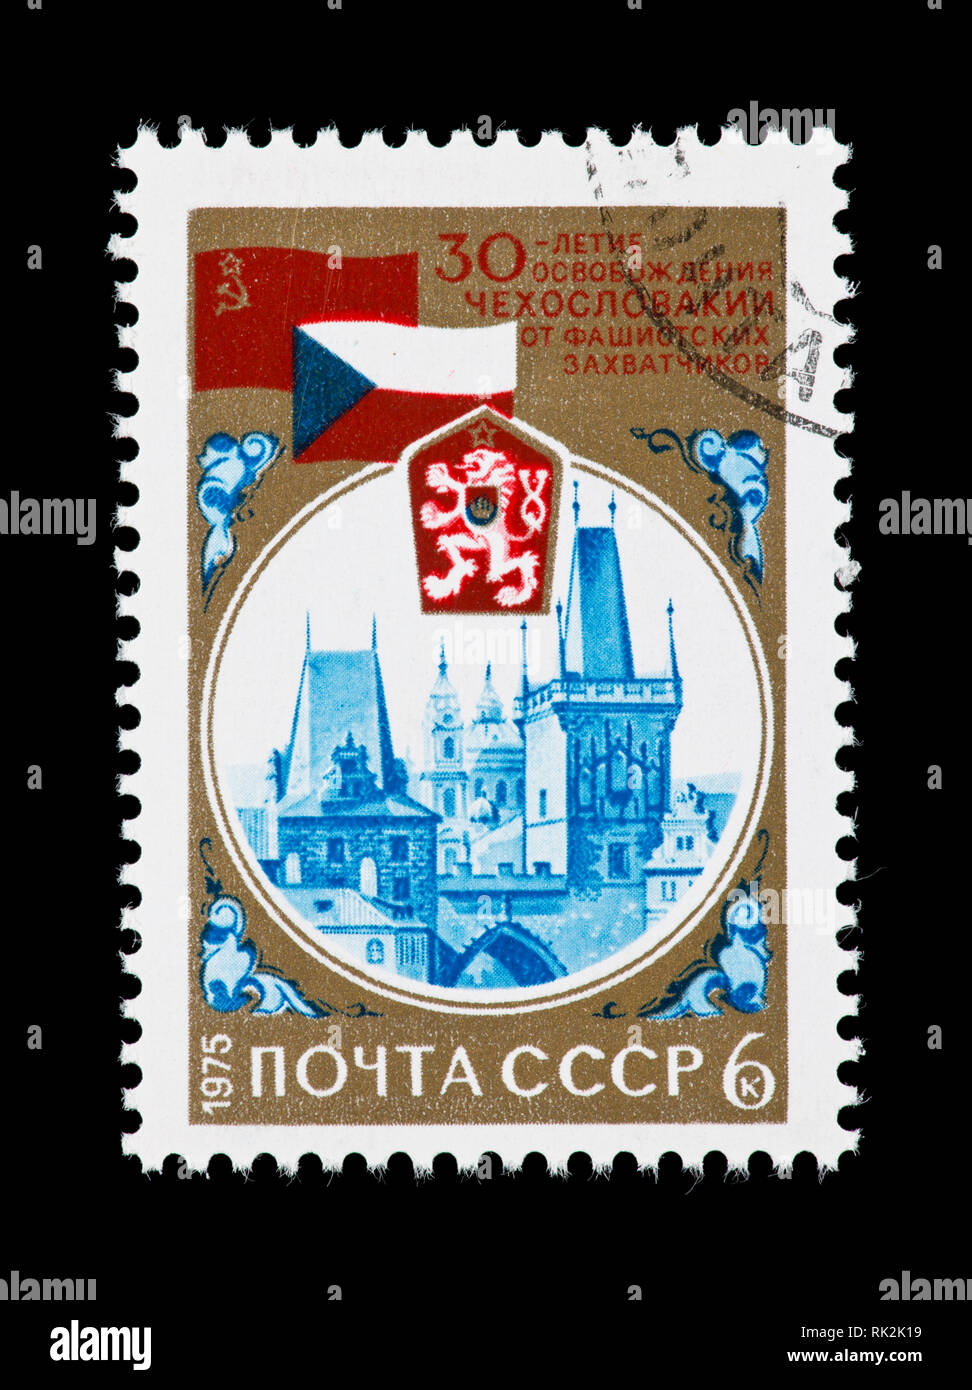 Briefmarke aus der Sowjetunion, die Karlsbrücke, und Fahnen, 30. Jahrestag der Befreiung der Tschechoslowakei vom Faschismus. Stockfoto